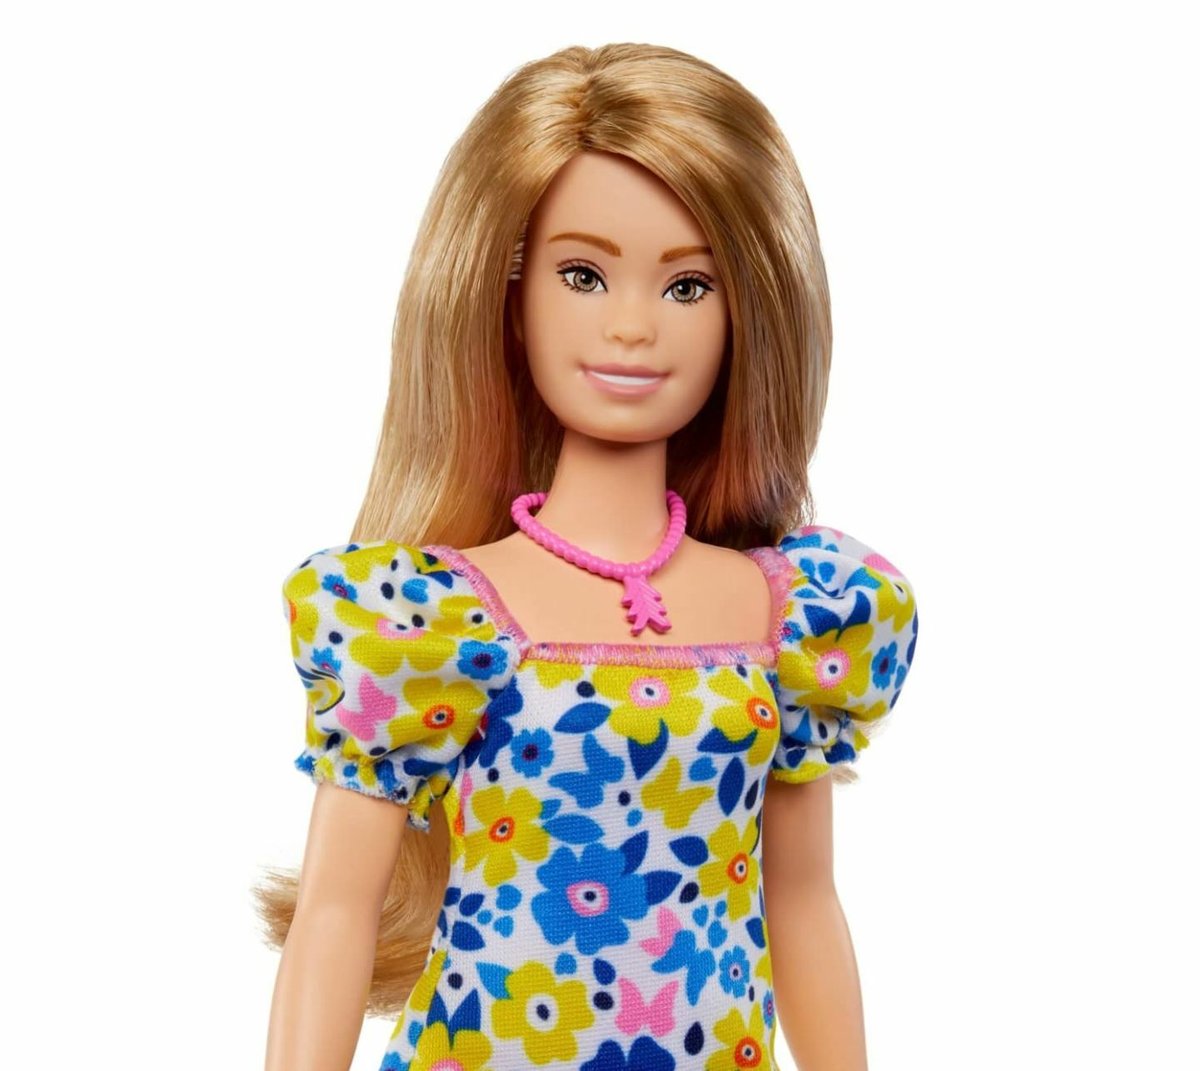 Mattel je odhodlán udělat svou ikonickou panenku, co možná nejinkluzivnější. Barbie má dnes stovky různých podob a rysů.